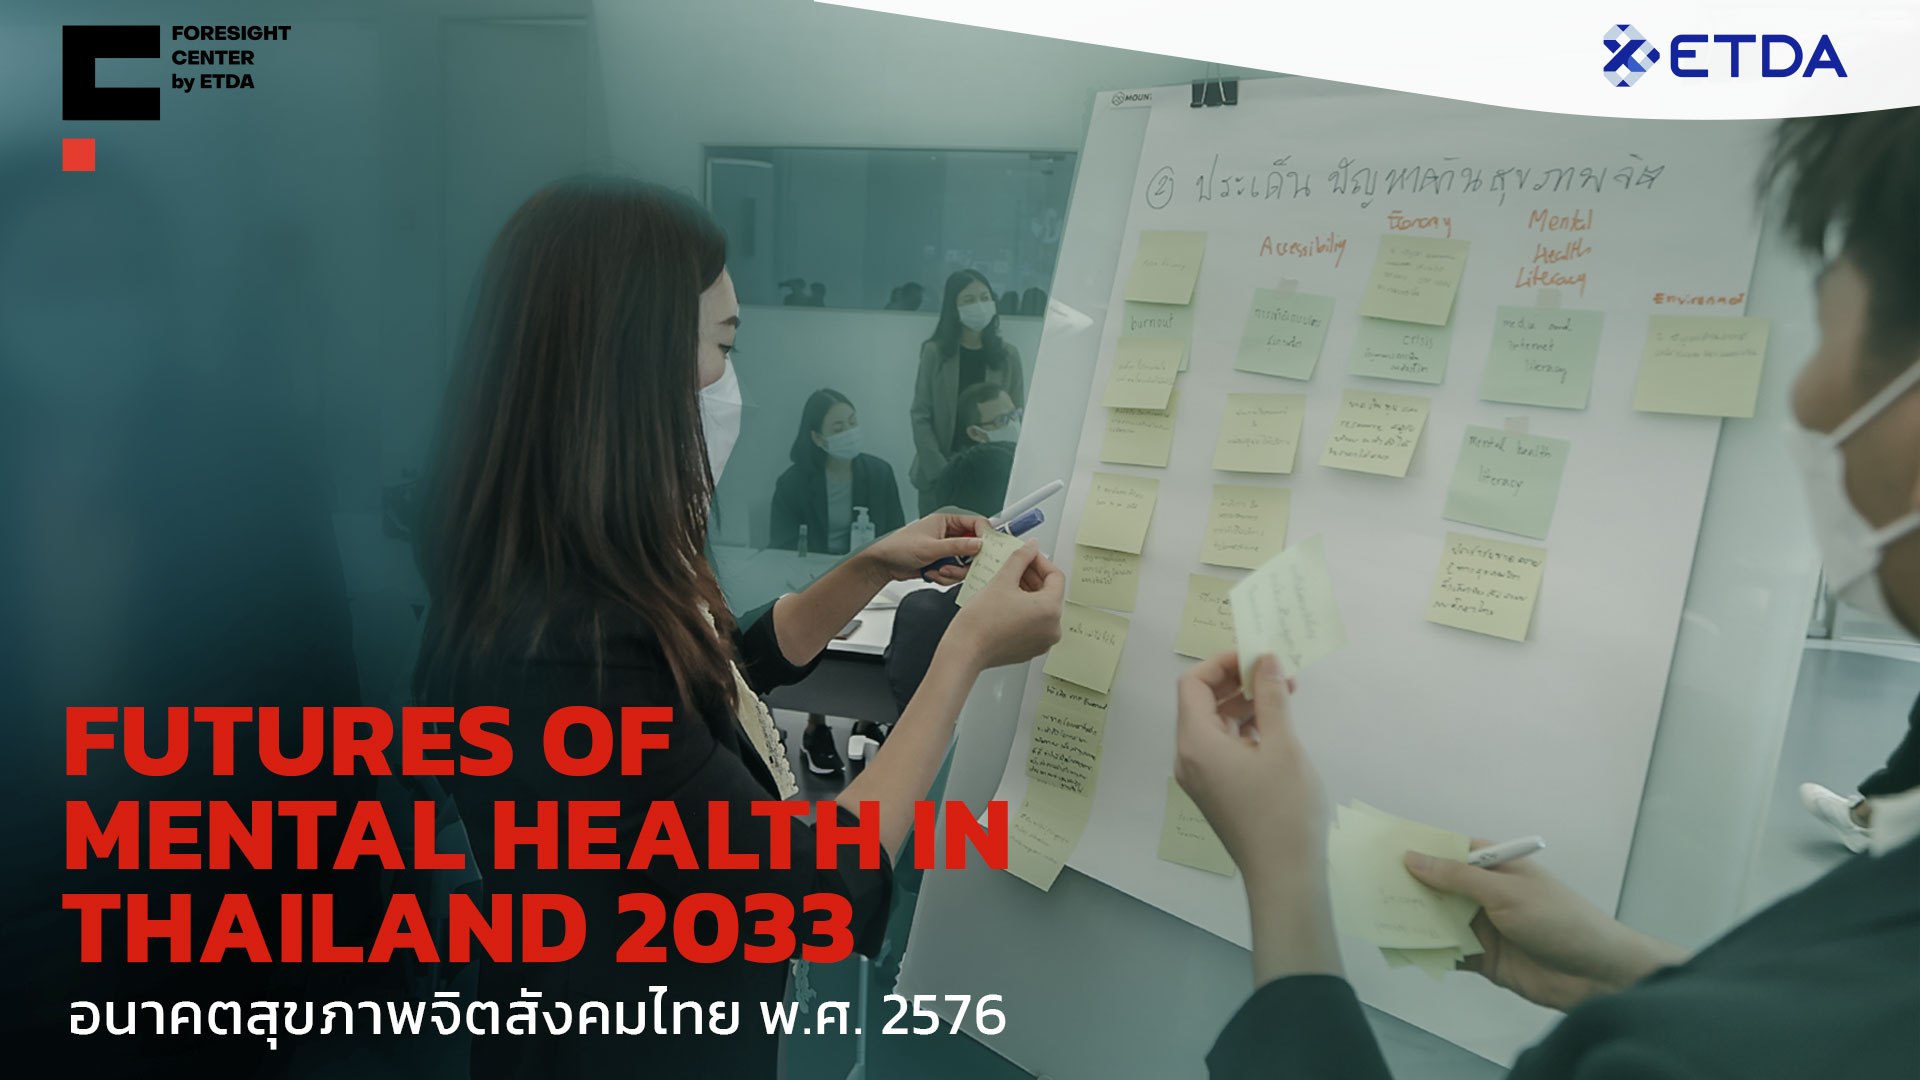  อนาคตสุขภาพจิตสังคมไทย พ.ศ. 2576 (Futures of Mental Health in Thailand 2033)